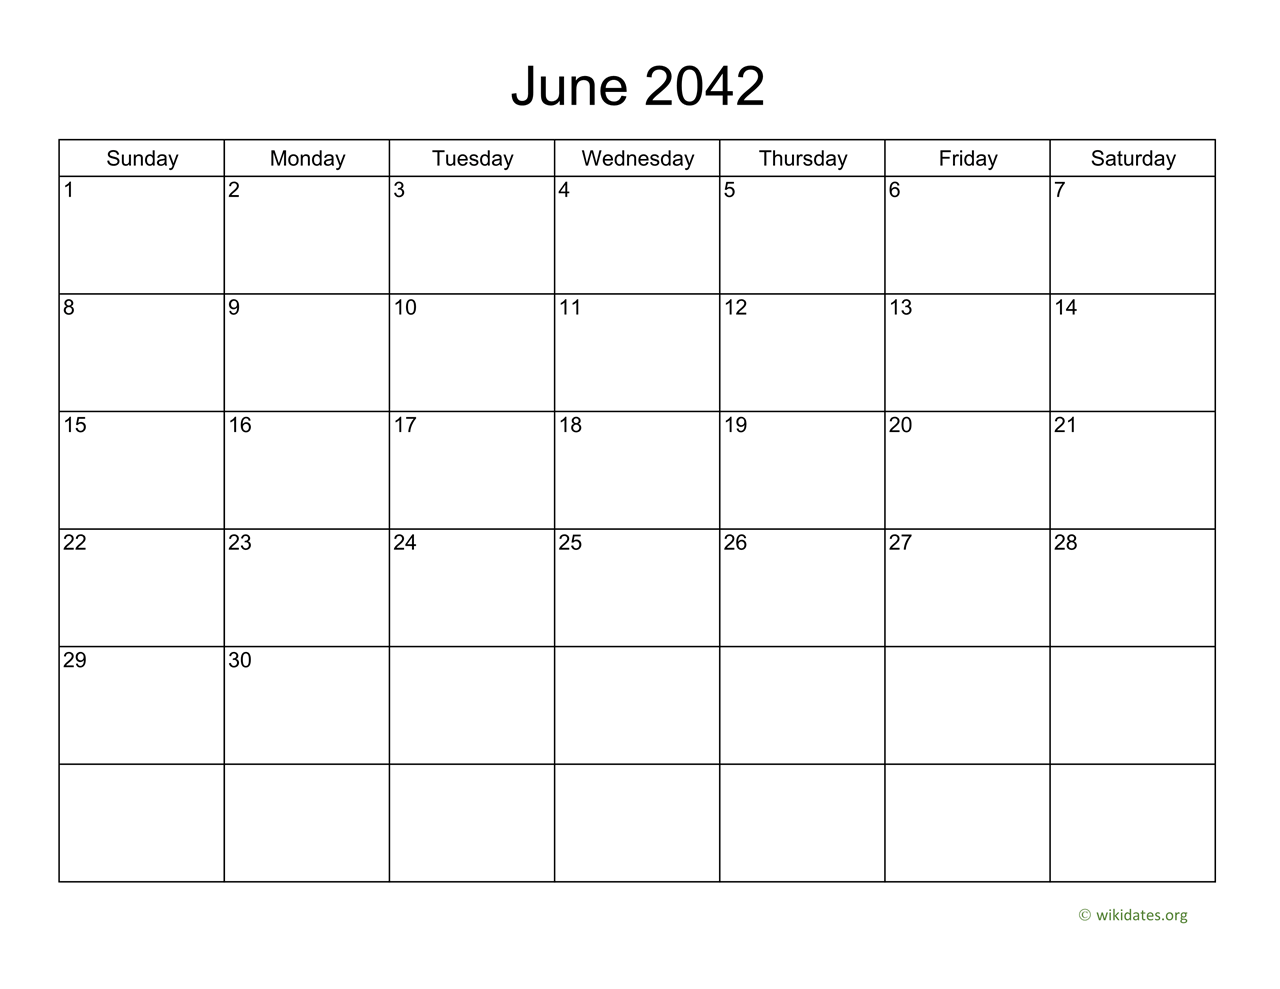 Basic Calendar for June 2042 | WikiDates.org